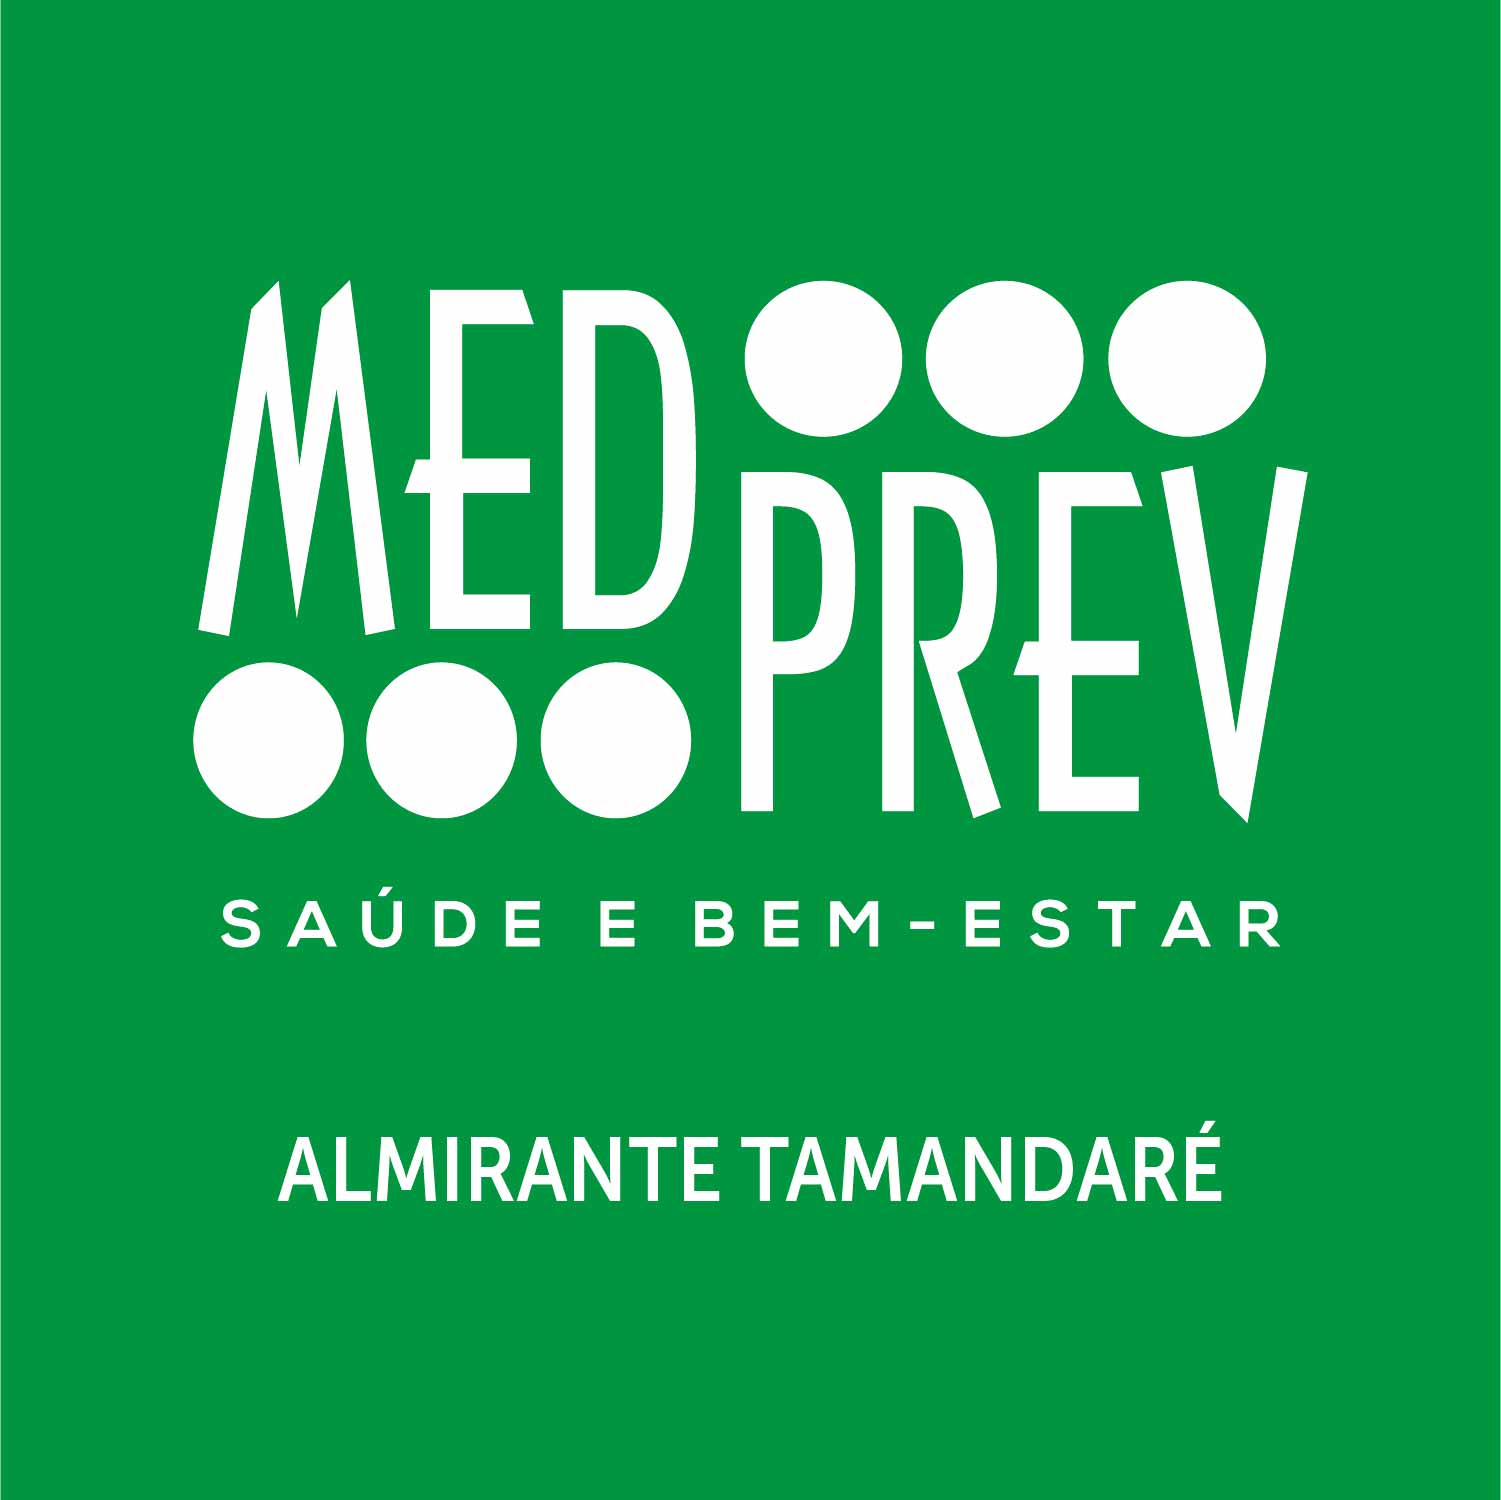 MED PREV ALMIRANTE TAMANDARÉ - Médicos - Medicina Preventiva - Almirante Tamandaré, PR